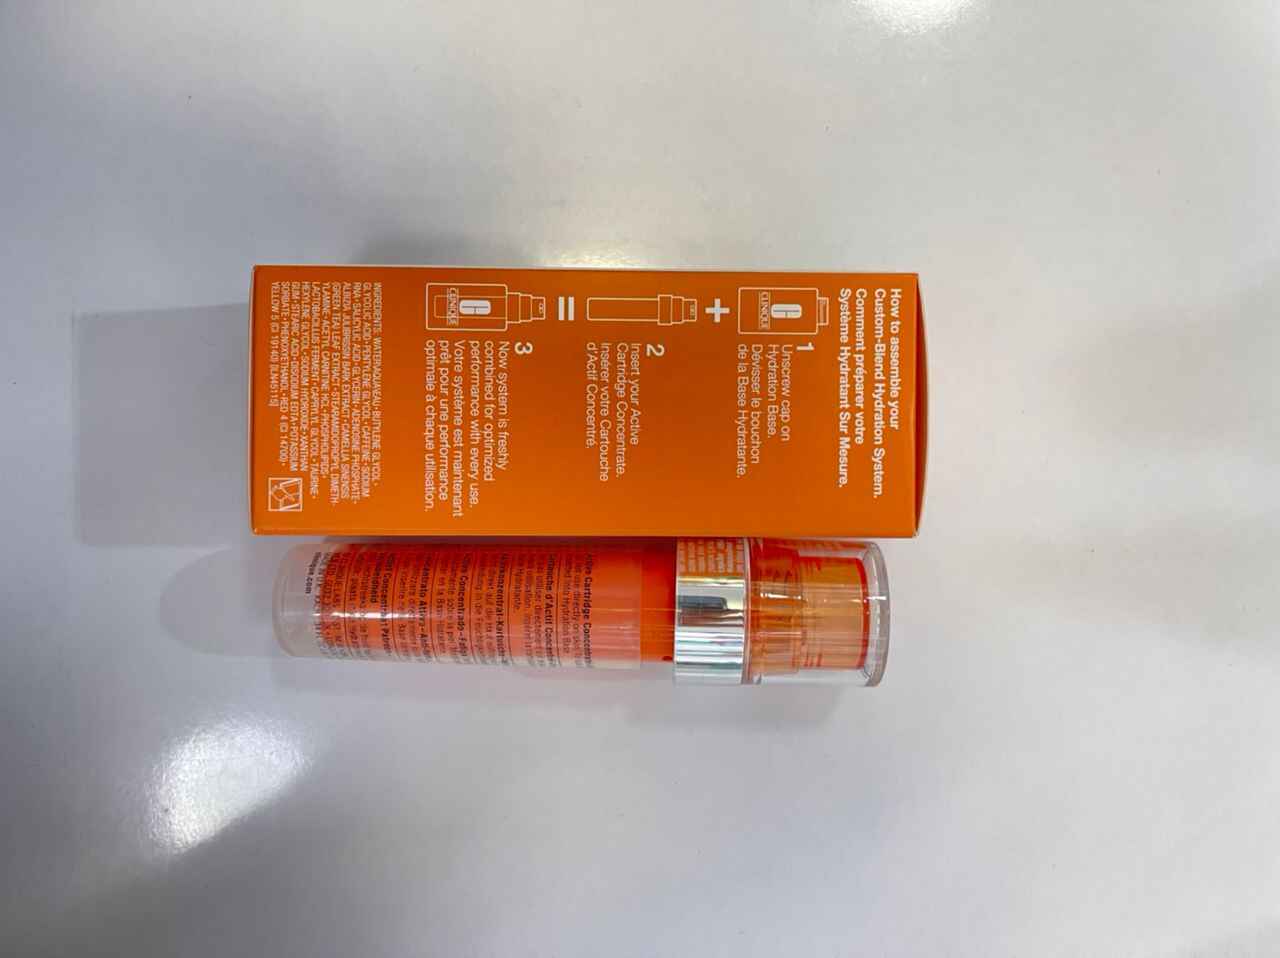 کارتریج کنسانتره فعال کلینیک CLINIQUE ID رنگ نارنجی مدل fatigue شفاف کننده و روشن کننده پوست